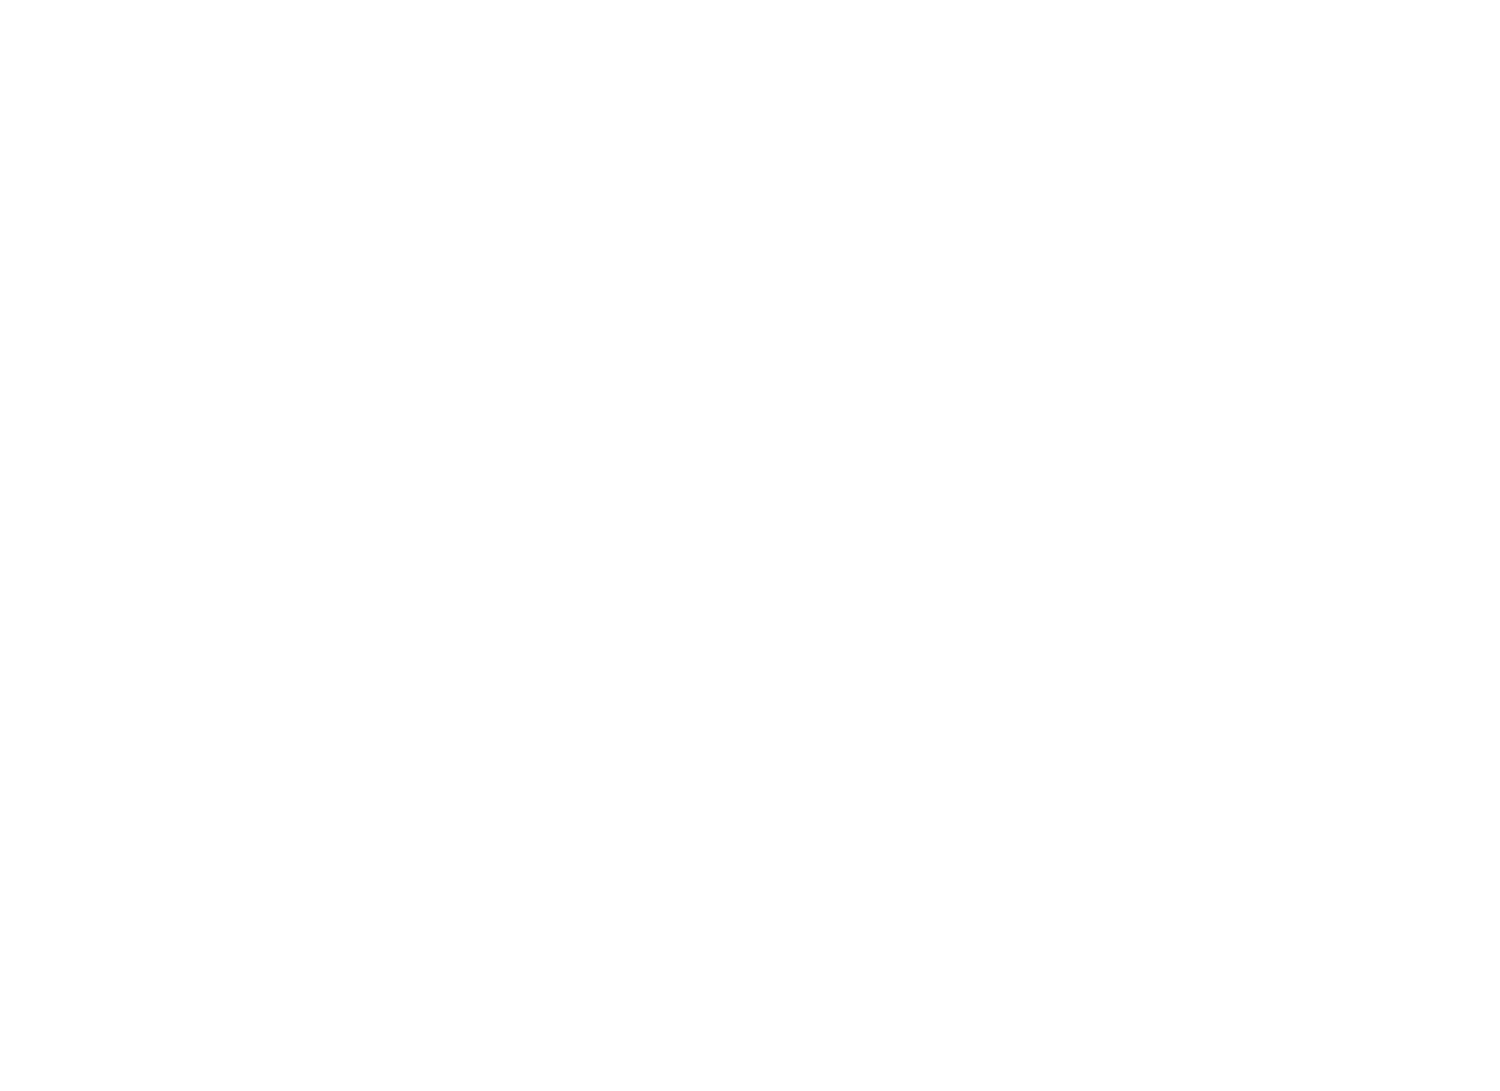 VillaStuccoInc